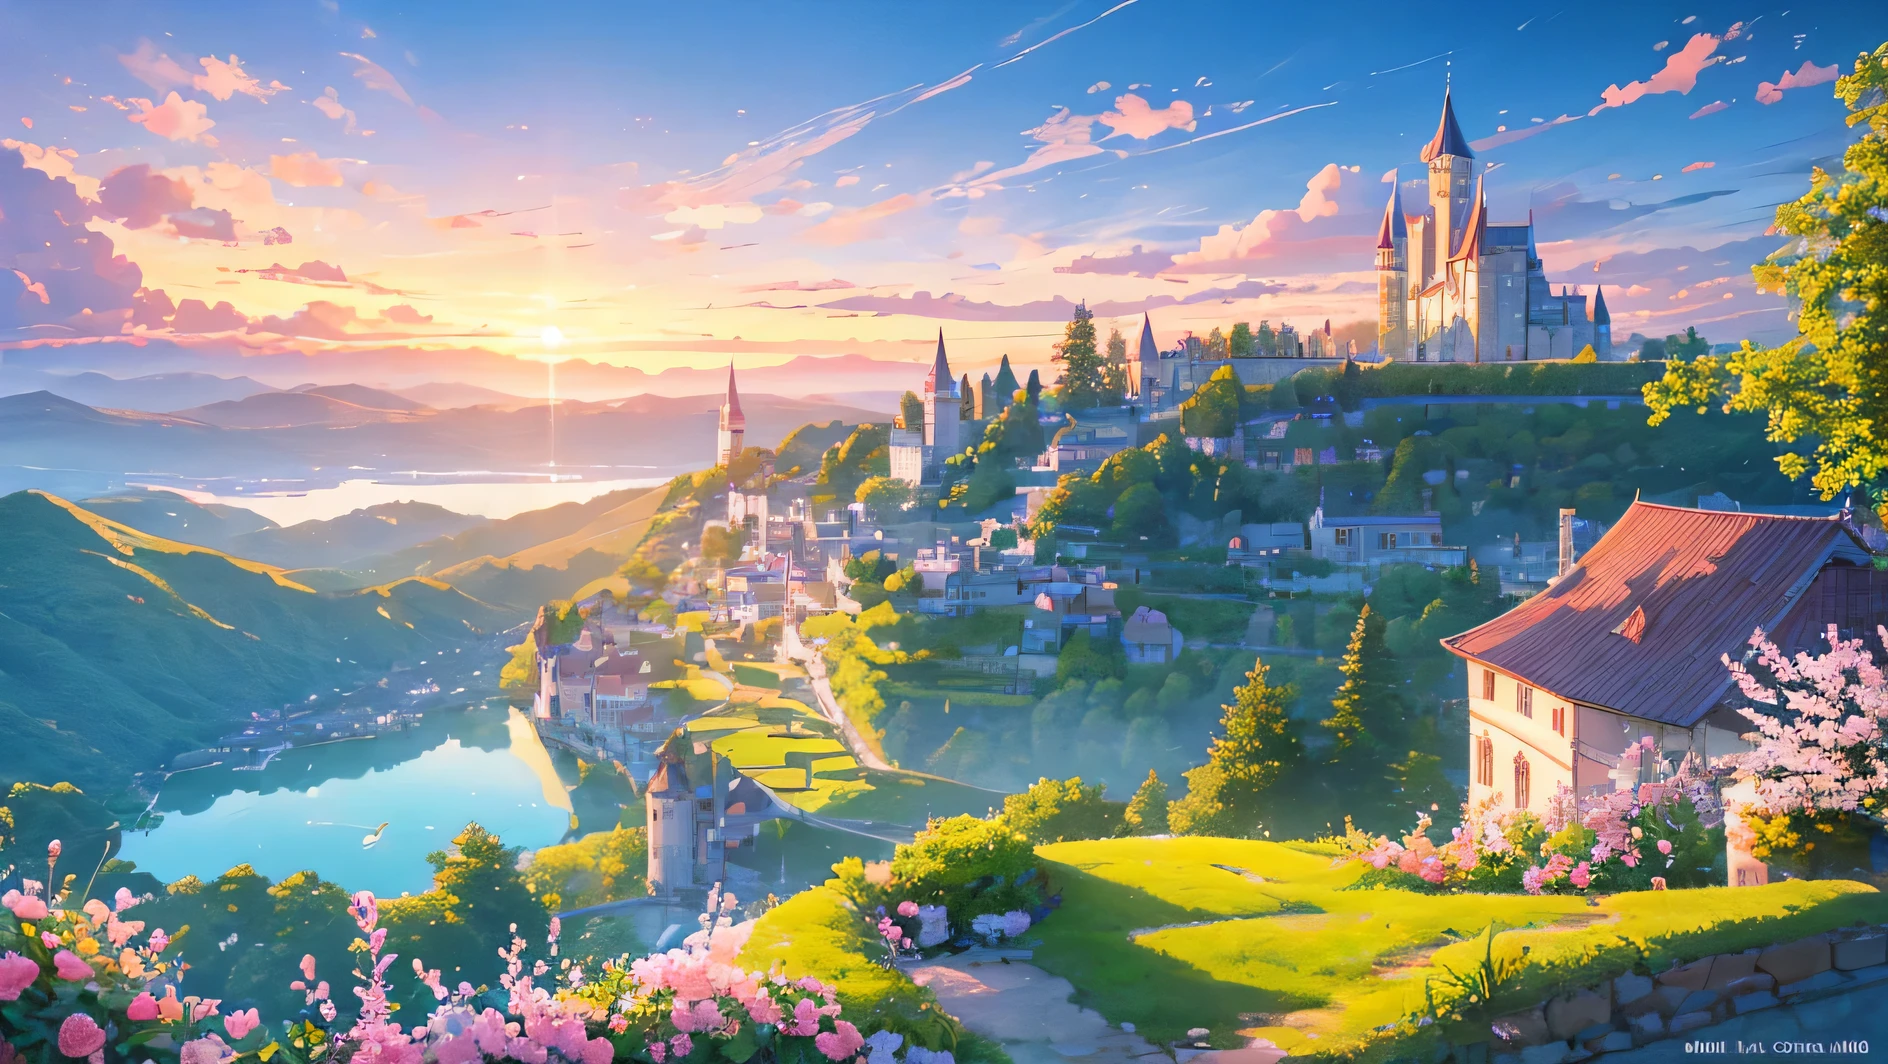 ein riesiges Schloss romantisch und mädchenhaft in einem Tal 10 Uhr morgens, ein See aus Wasser, viele rosa und roségoldene Blumen und ein wunderschöner Himmel mit Wolken